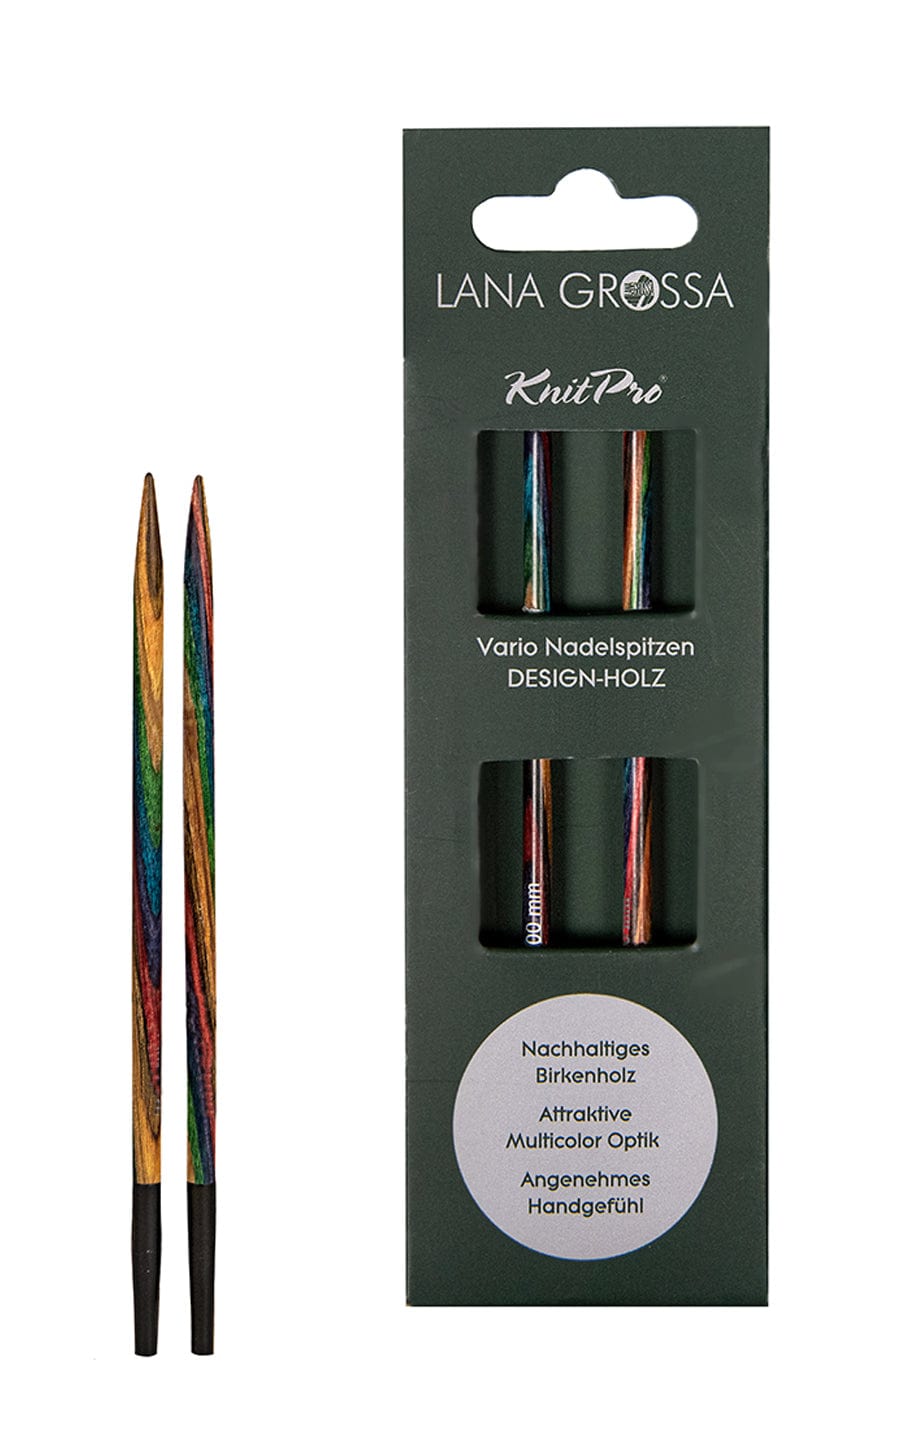 Kurze 3,5 mm Nadelspitze Vario aus Holz - neue Verpackung von LANA GROSSA jetzt online kaufen bei OONIQUE